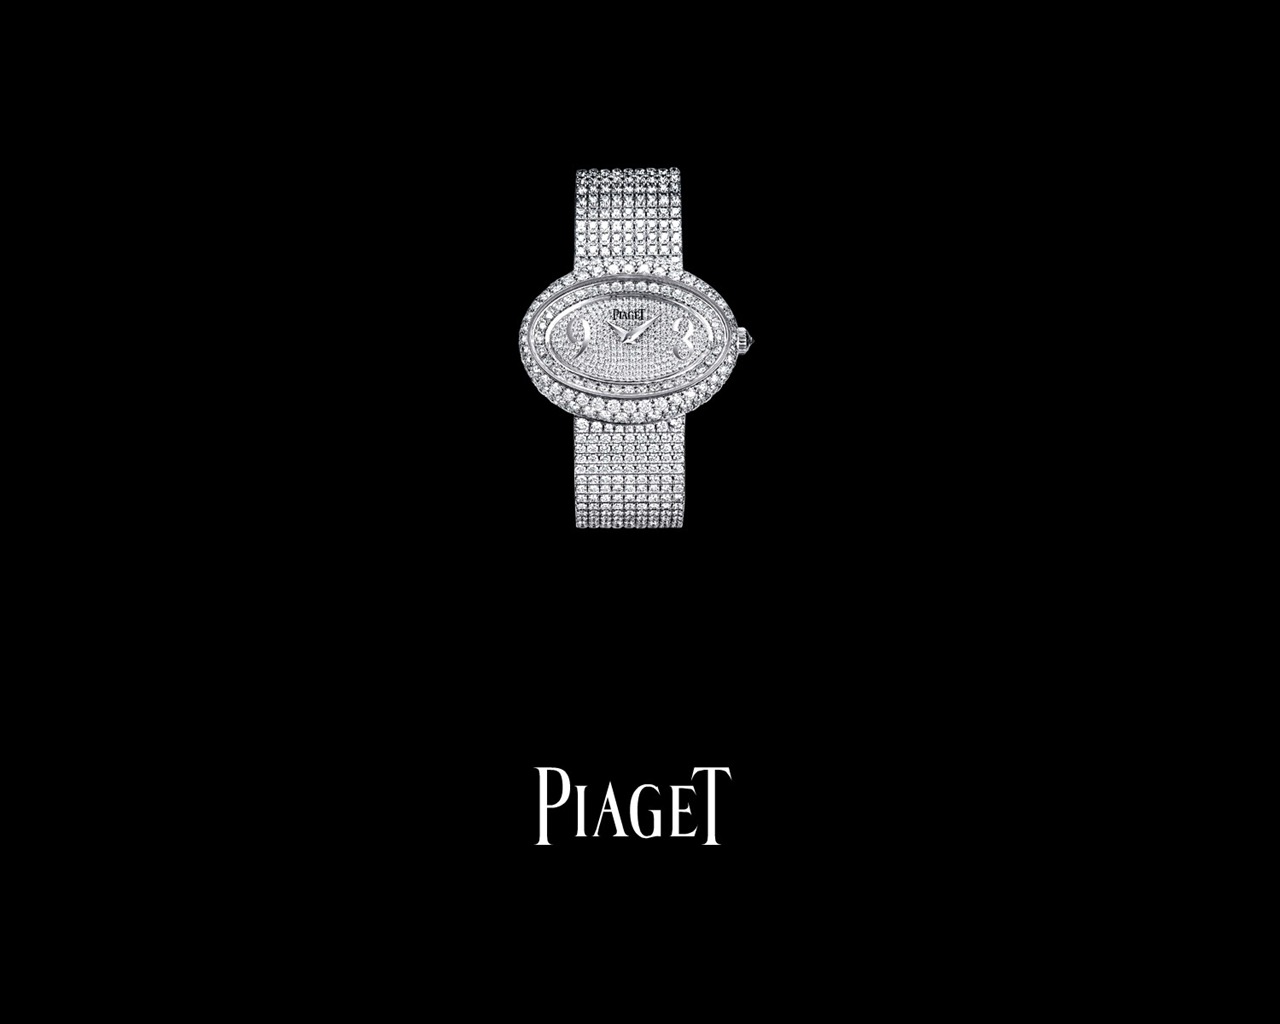 Piaget Diamante fondos de escritorio de reloj (1) #20 - 1280x1024